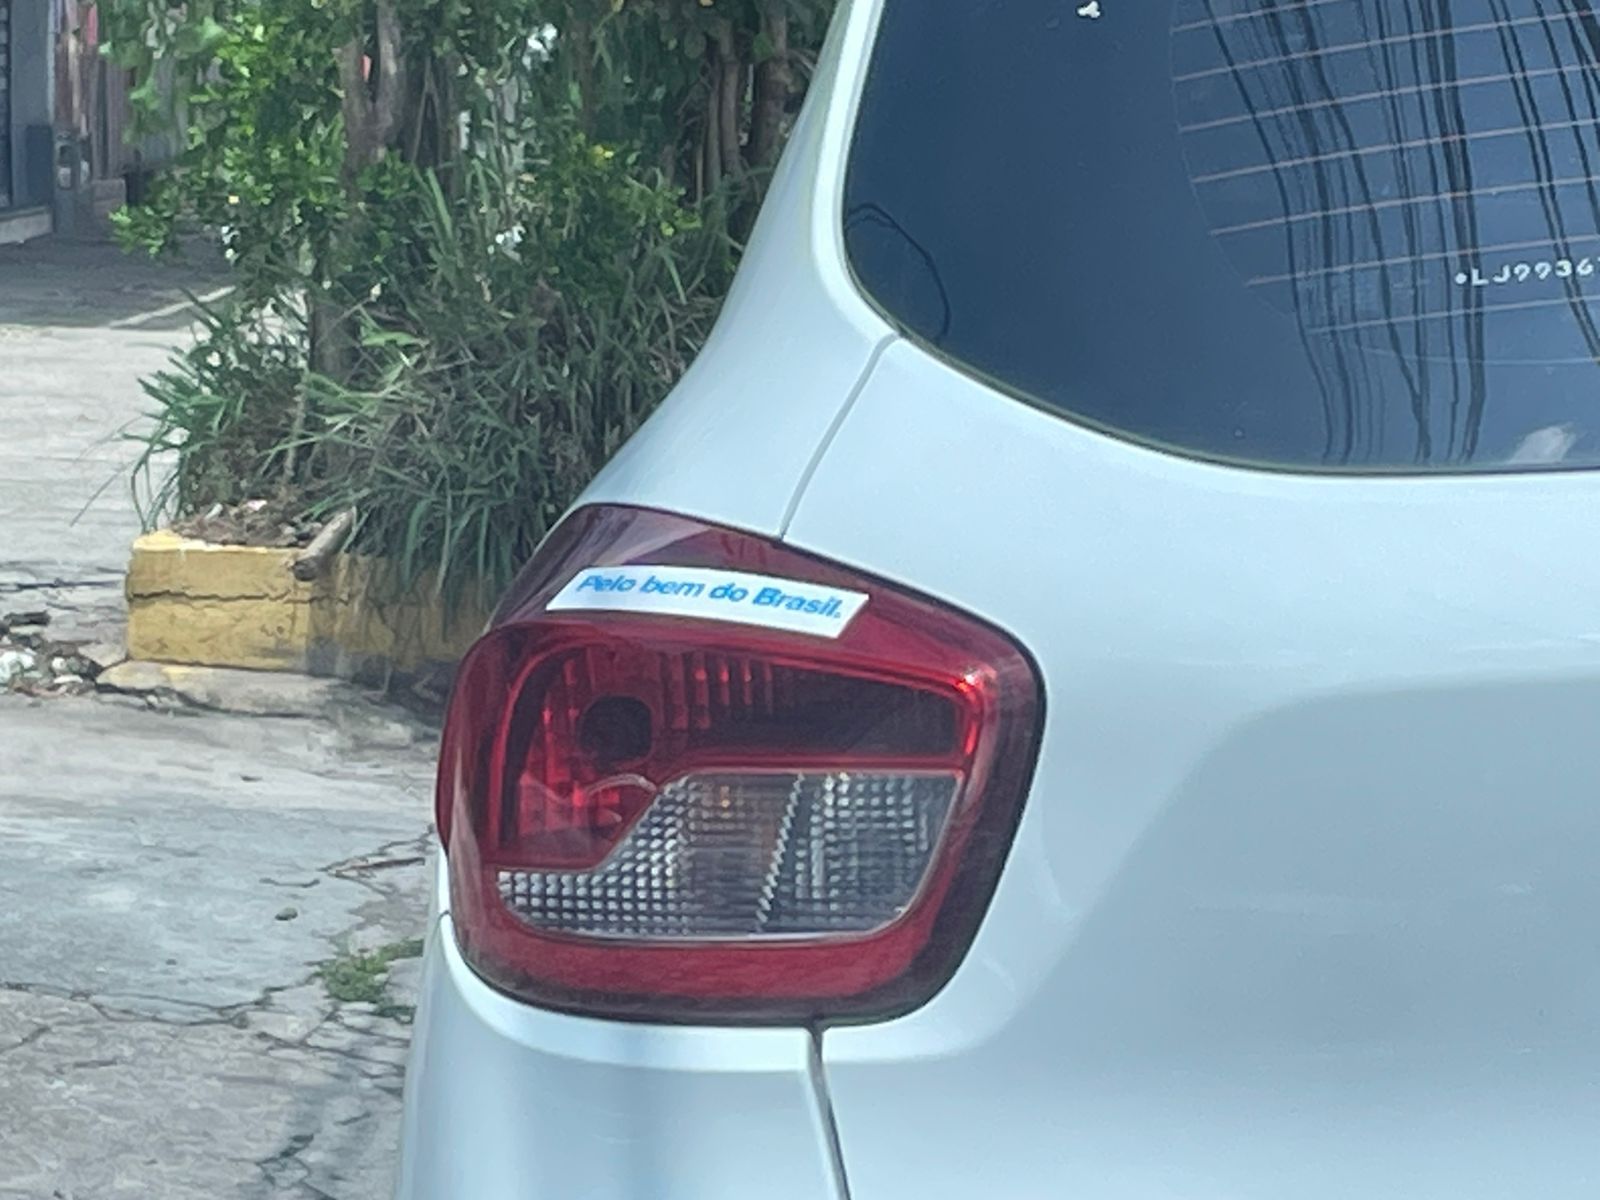 O carro também tem um adesivo com a frase "Pelo bem do Brasil"